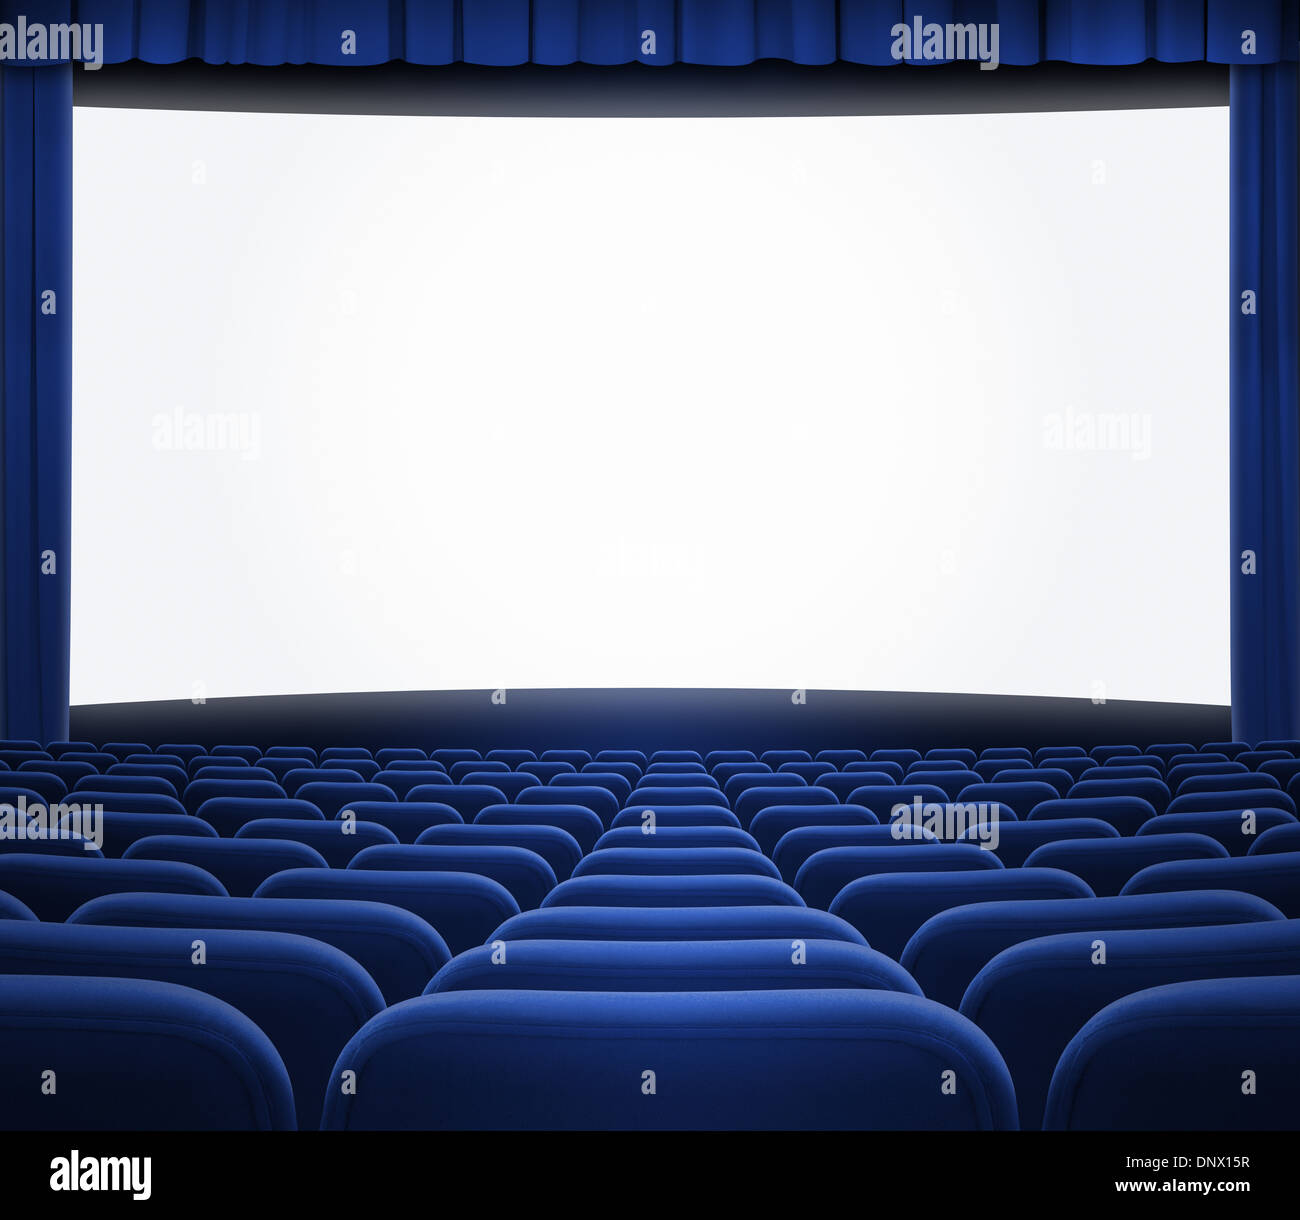 Écran de cinéma avec sièges et rideau bleu ouvert Banque D'Images